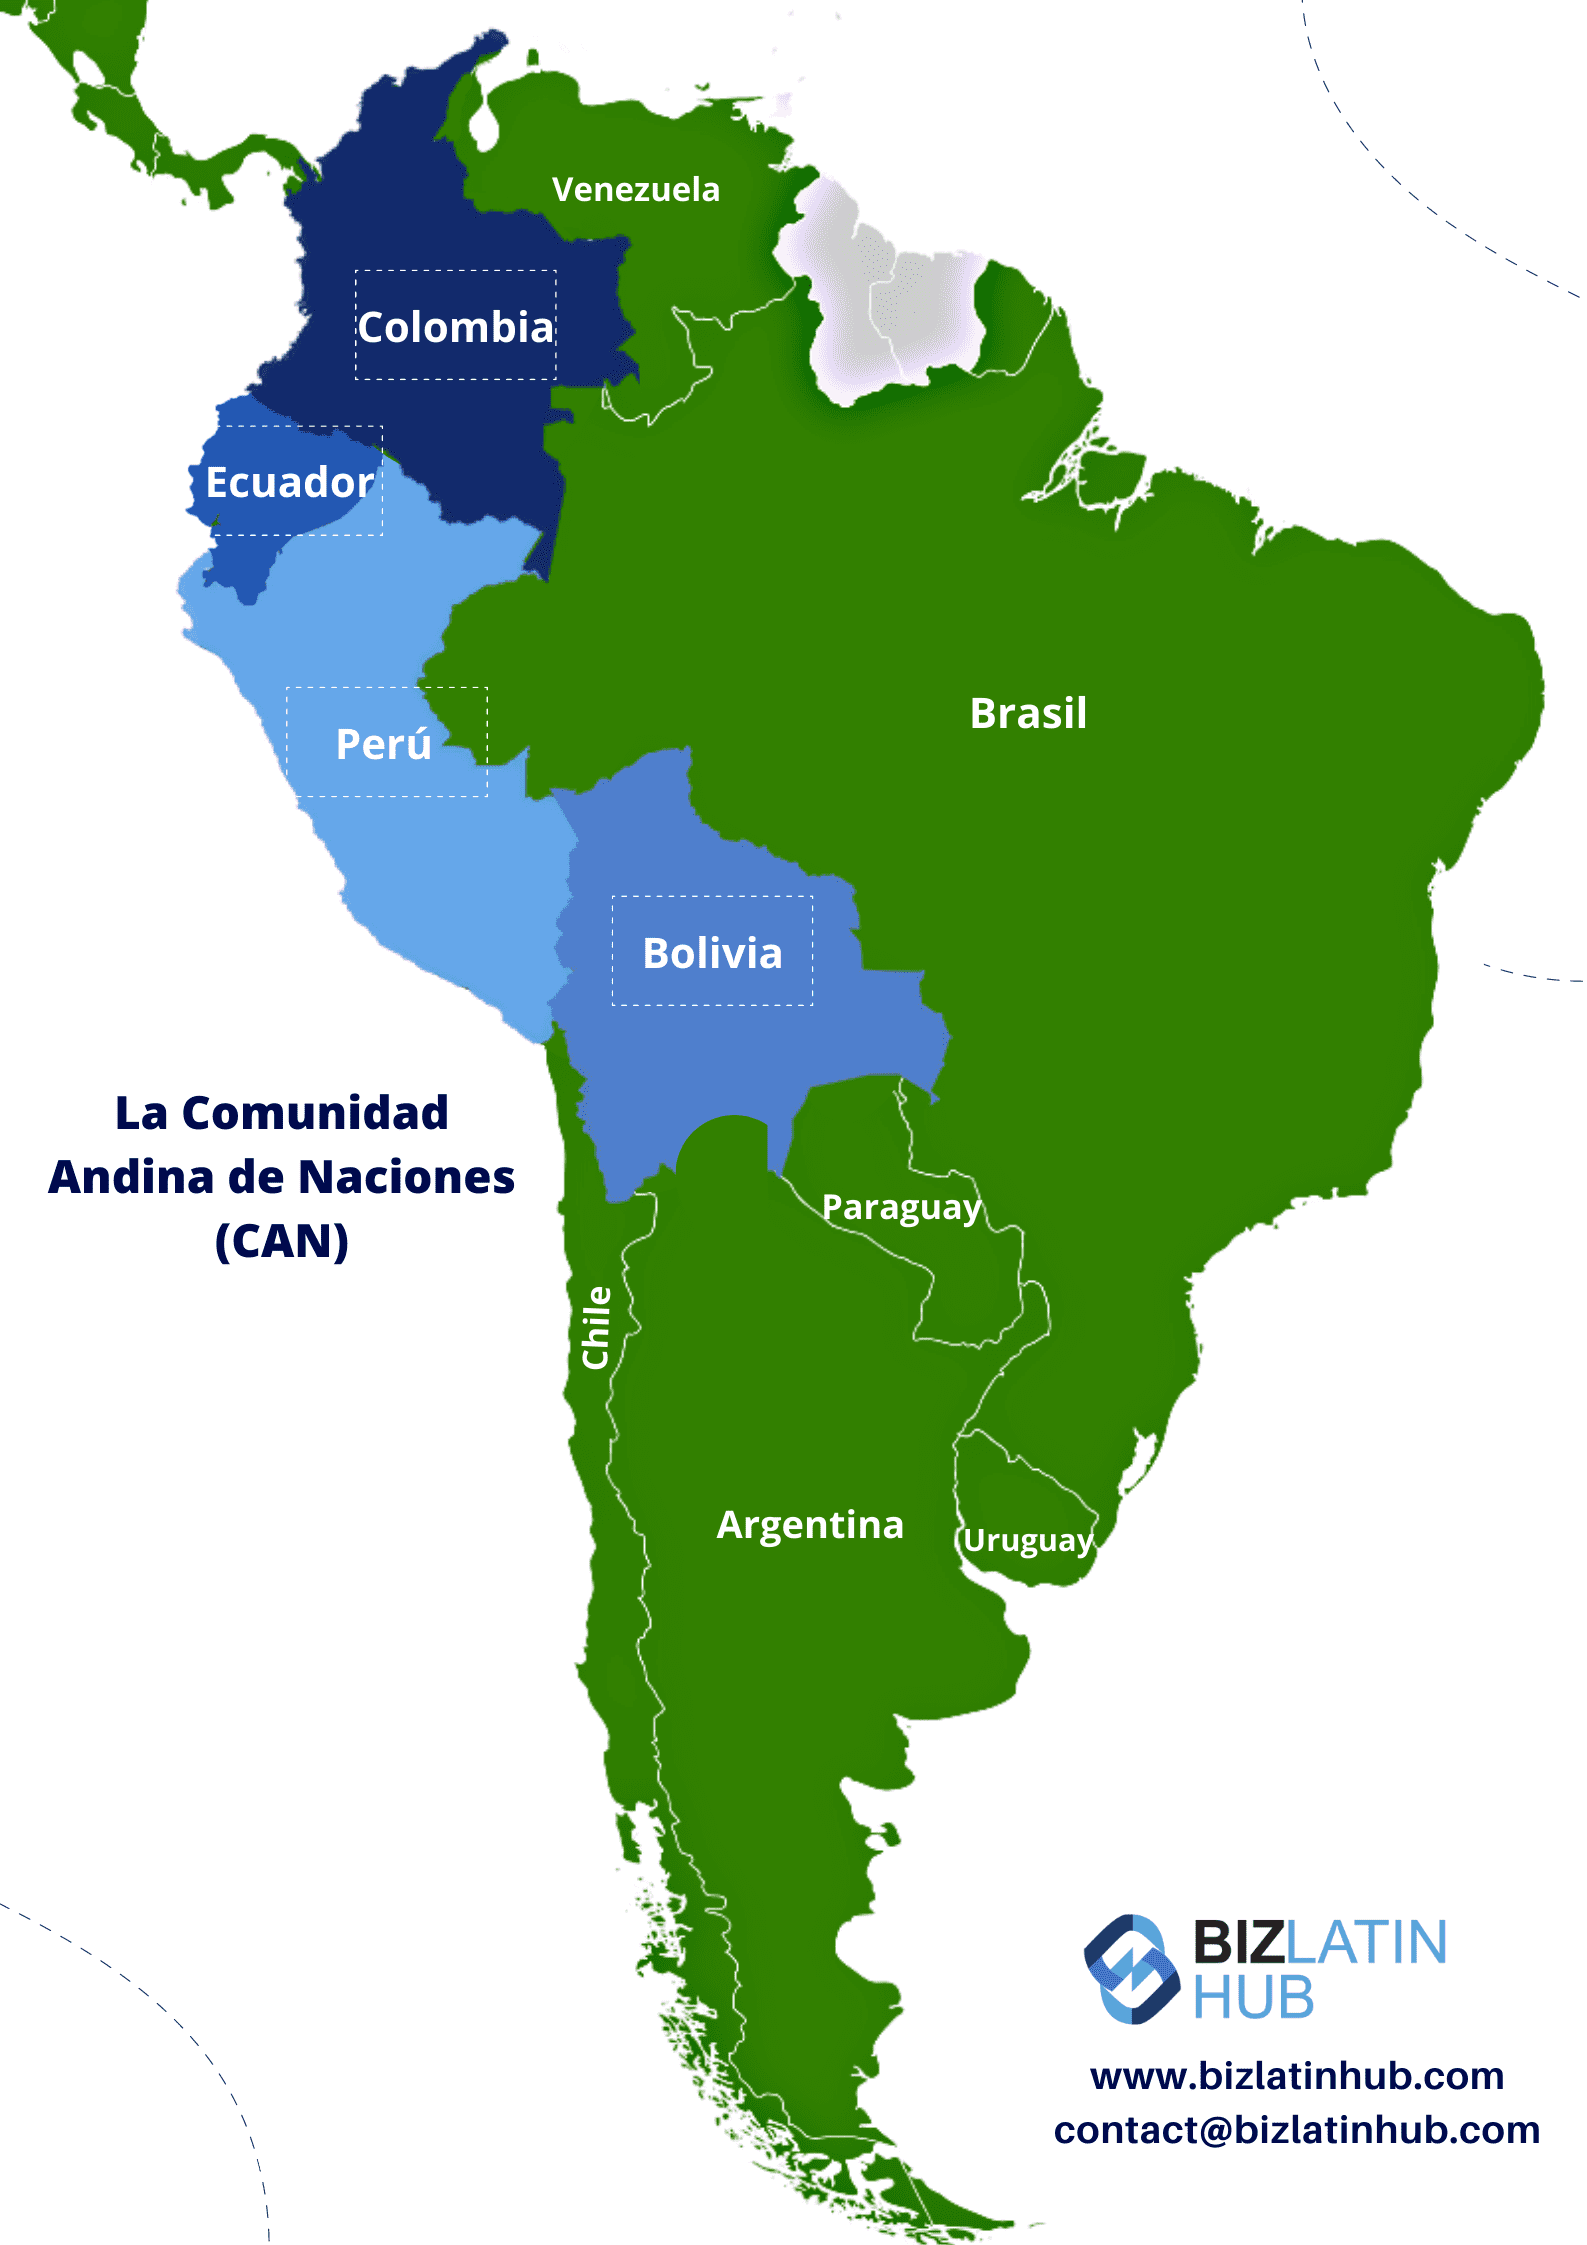 Un gráfico de Biz Latin Hub de un mapa de la Comunidad Andina de Naciones (CAN)